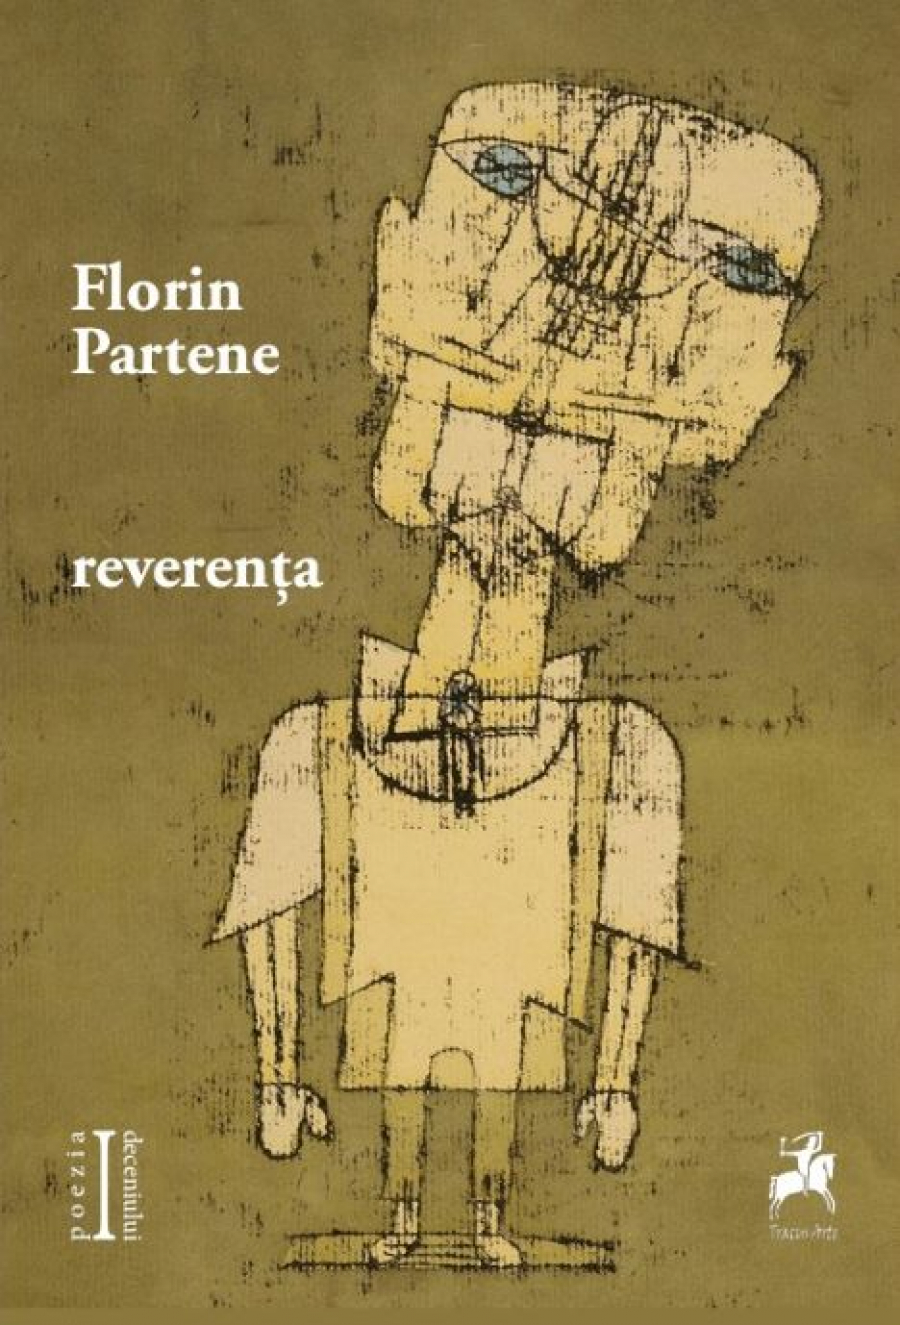 CRONICĂ DE CARTE | ”Camera” lui Florin Partene. Poezie agnostică? ”Reverenţă”, la a treia ediţie...